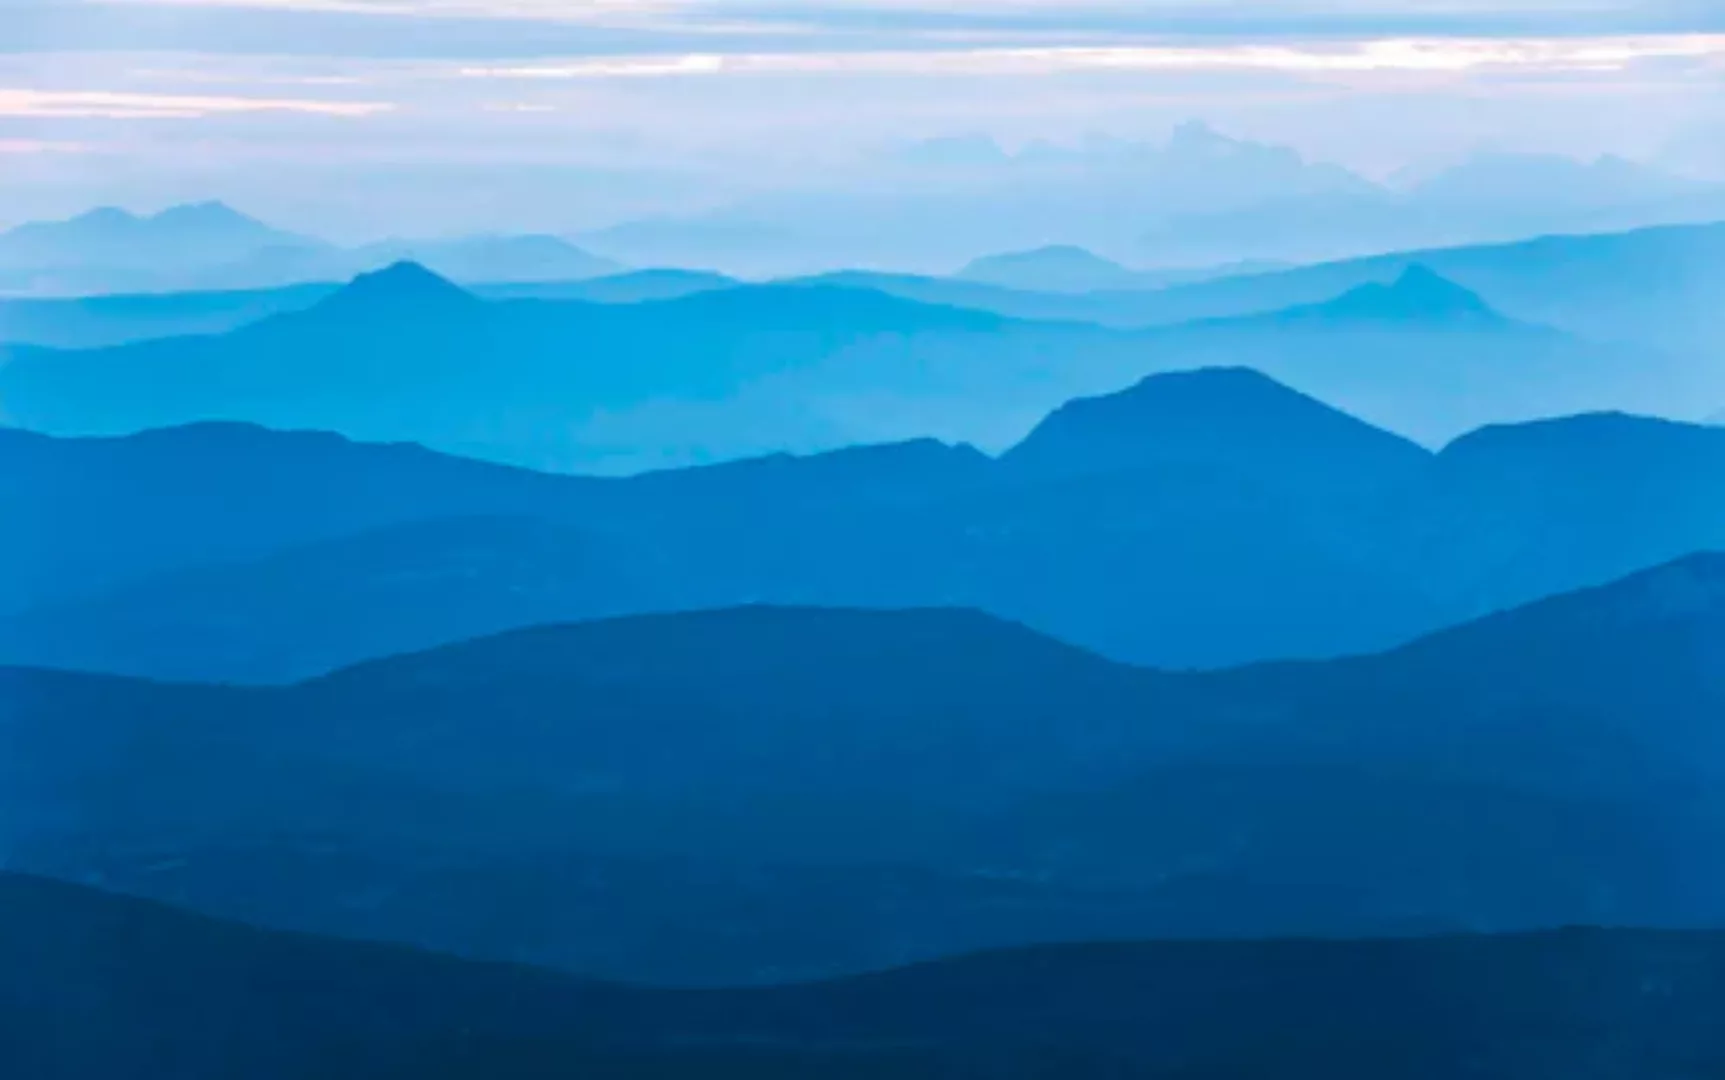 KOMAR Vlies Fototapete - Blue Mountain - Größe 400 x 250 cm mehrfarbig günstig online kaufen